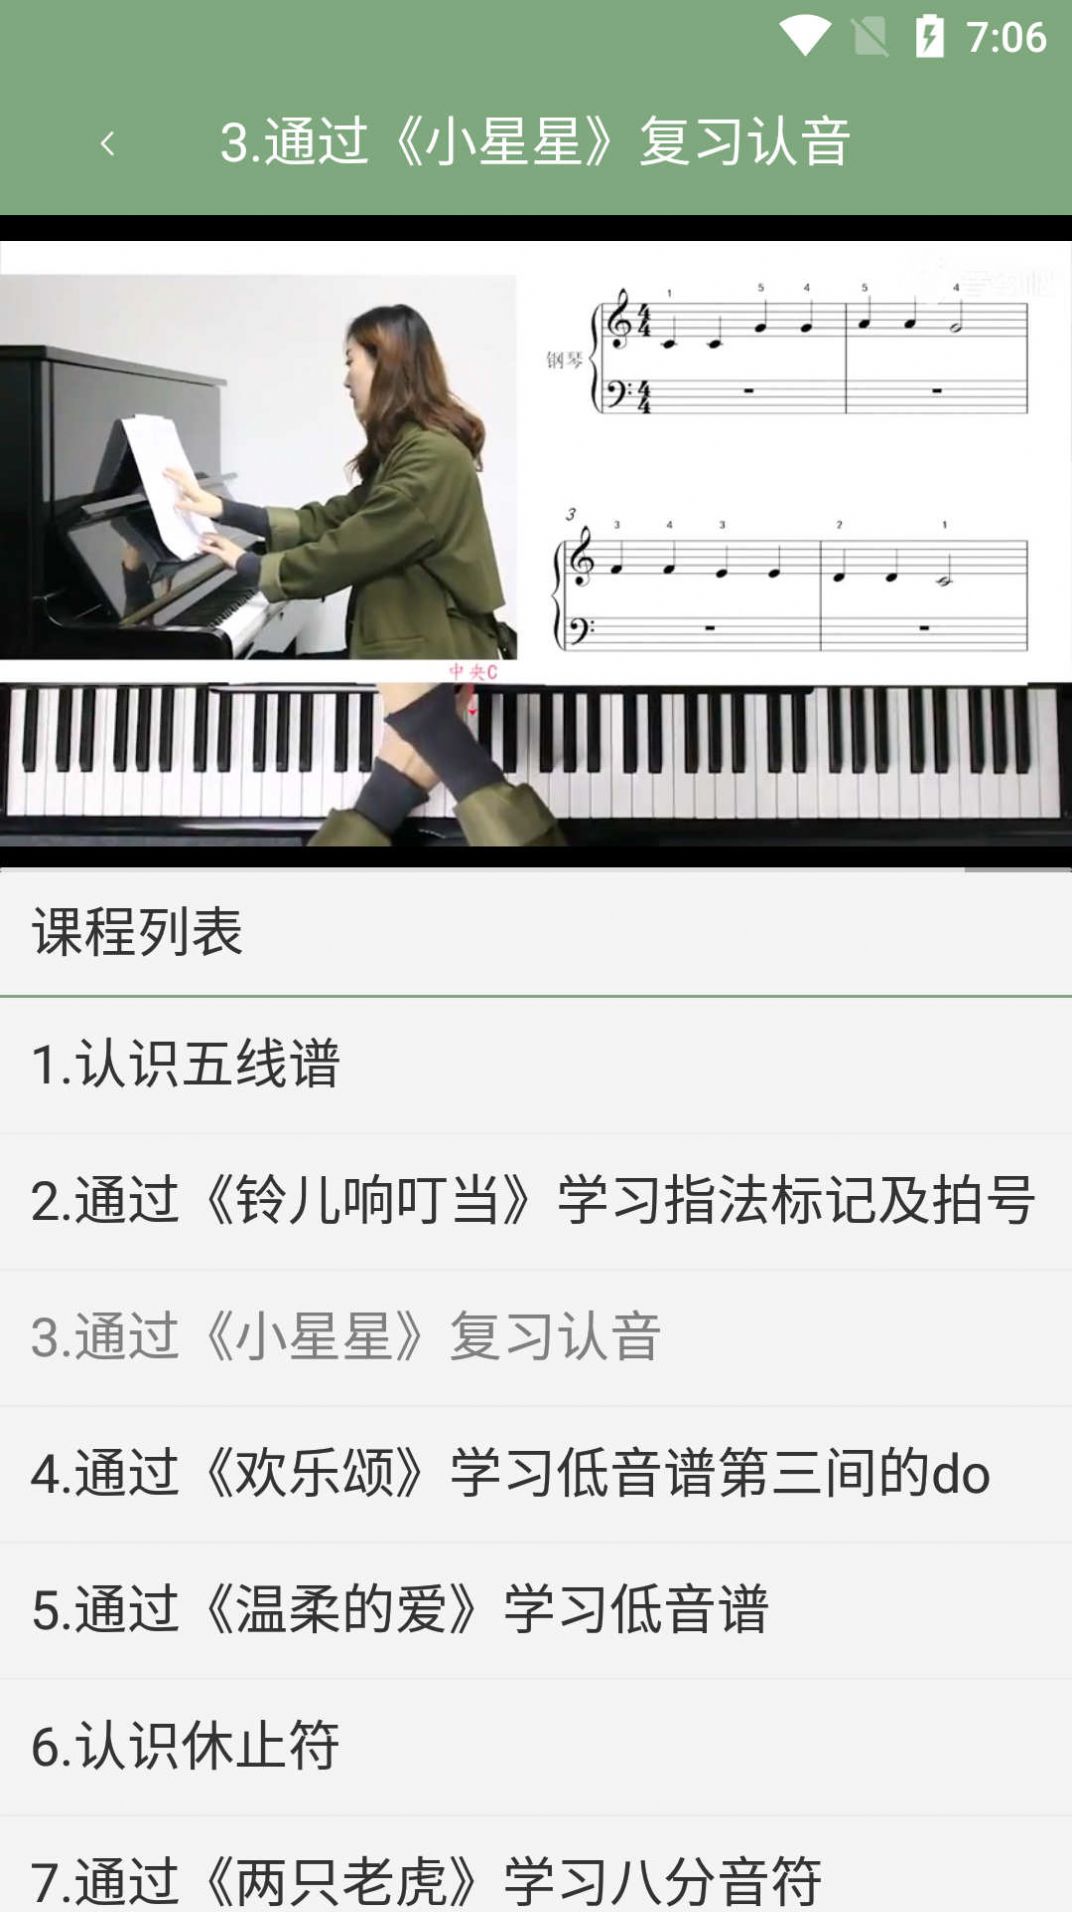 小白自学钢琴app安卓版图片2